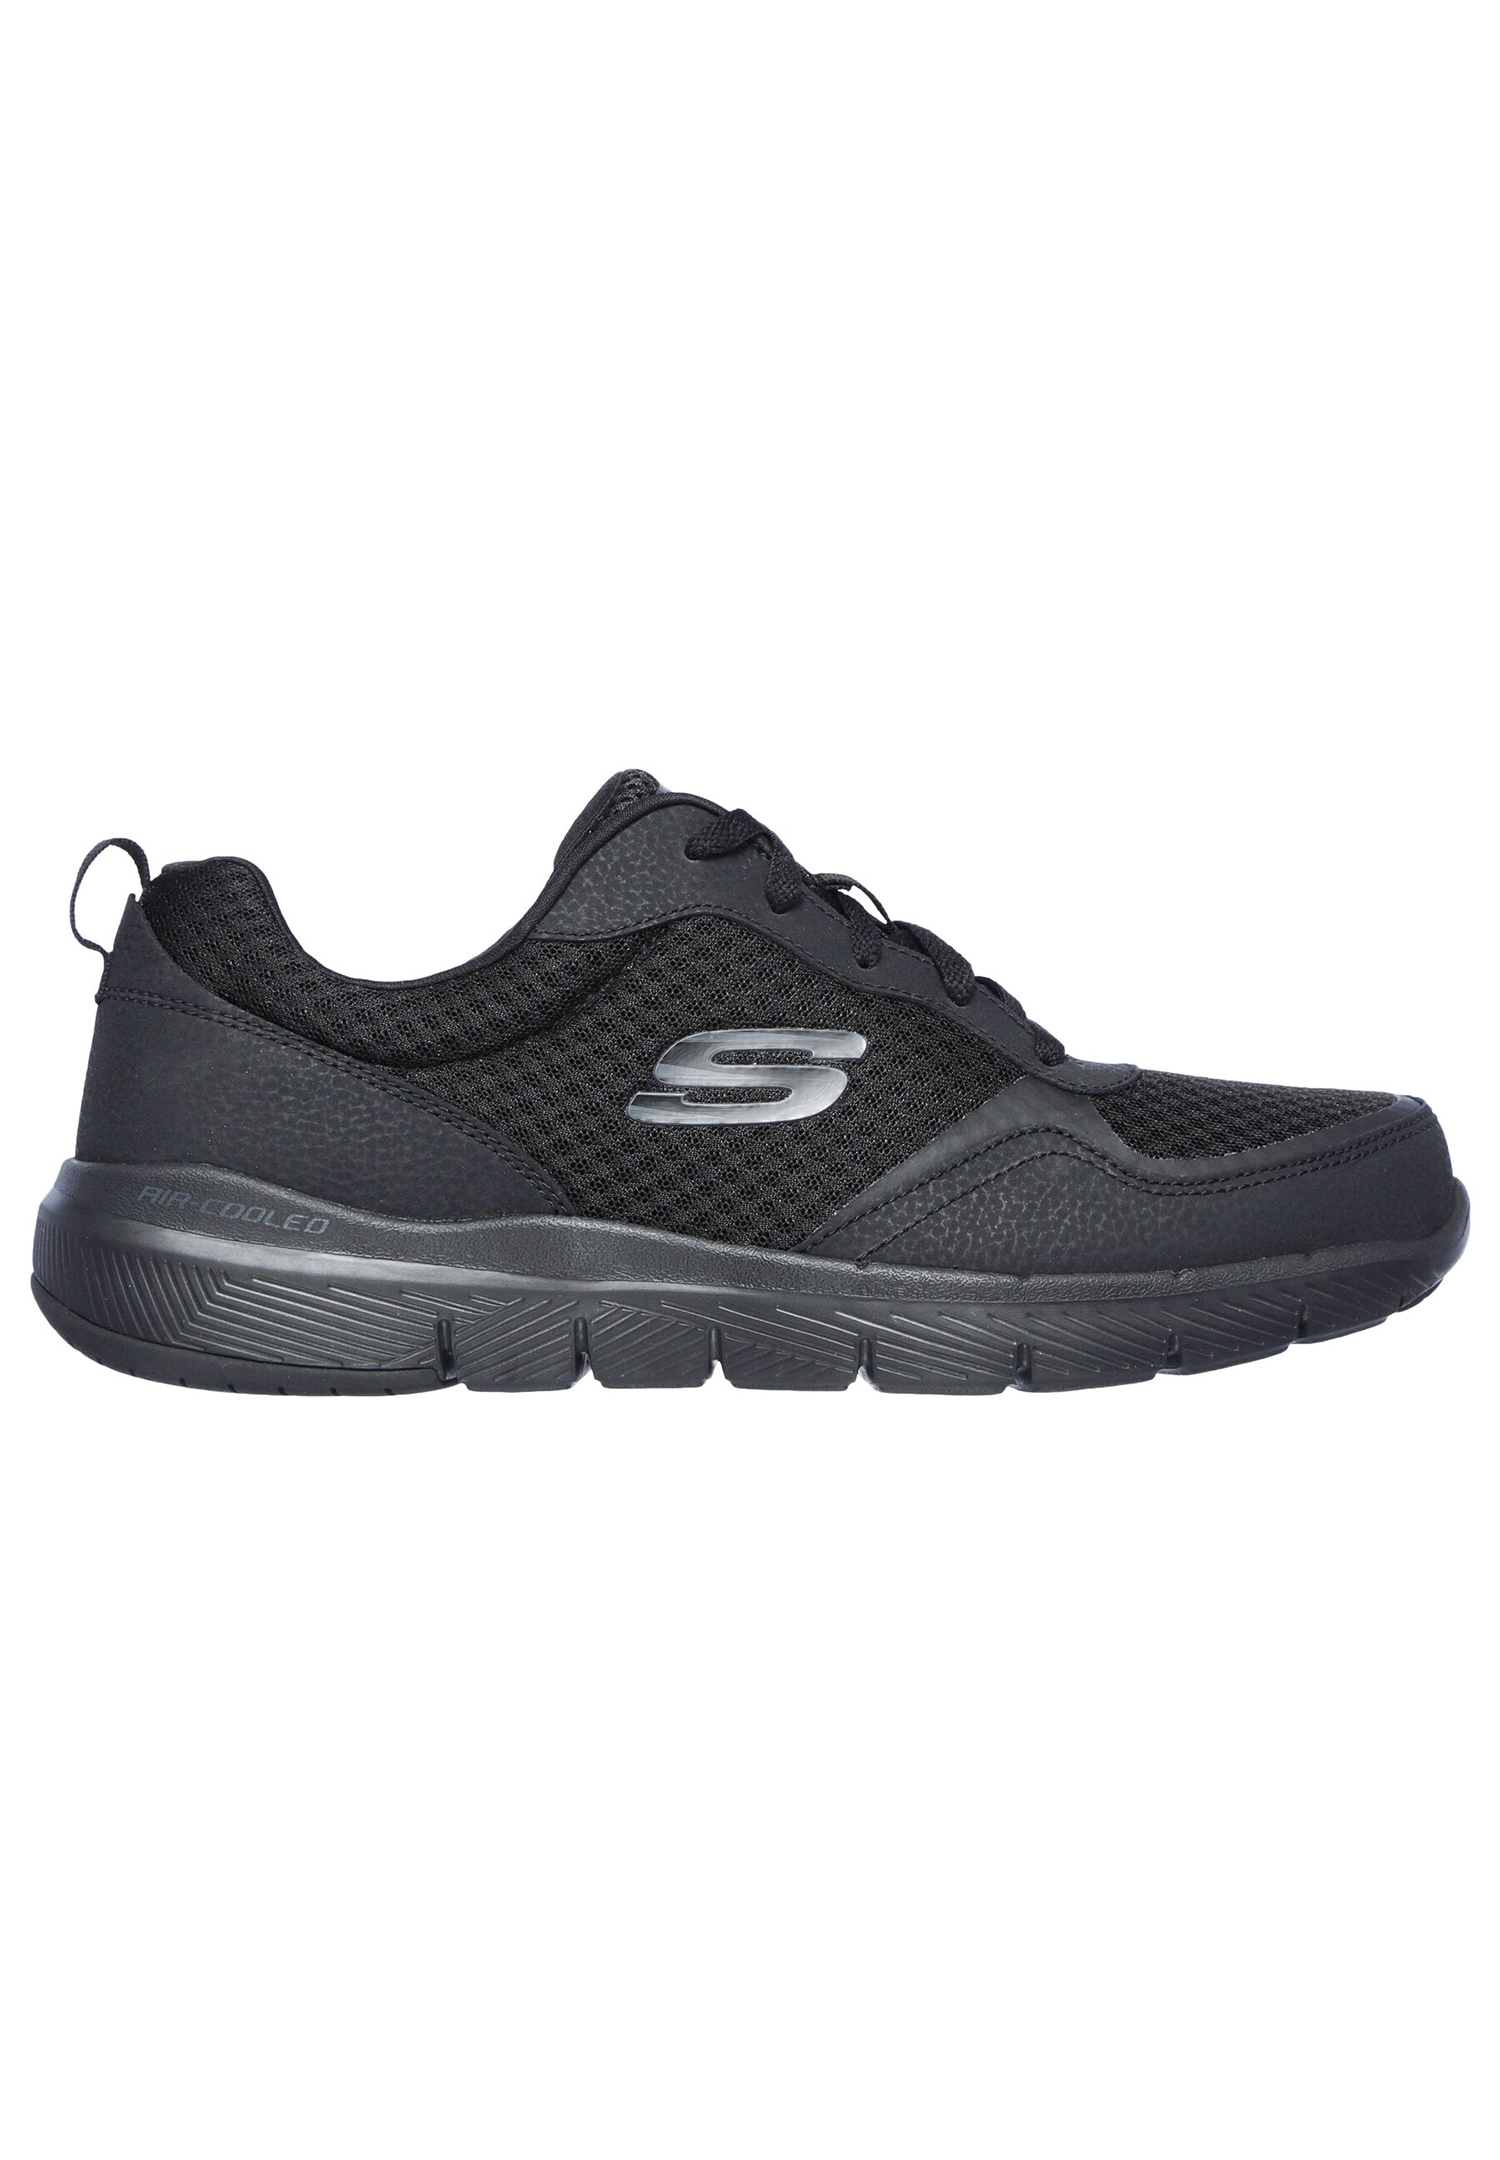 Низкие кроссовки Skechers Low FLEX ADVANTAGE 3.0, черный кроссовки низкие flex advantage 5 0 skechers sport цвет gray charcoal